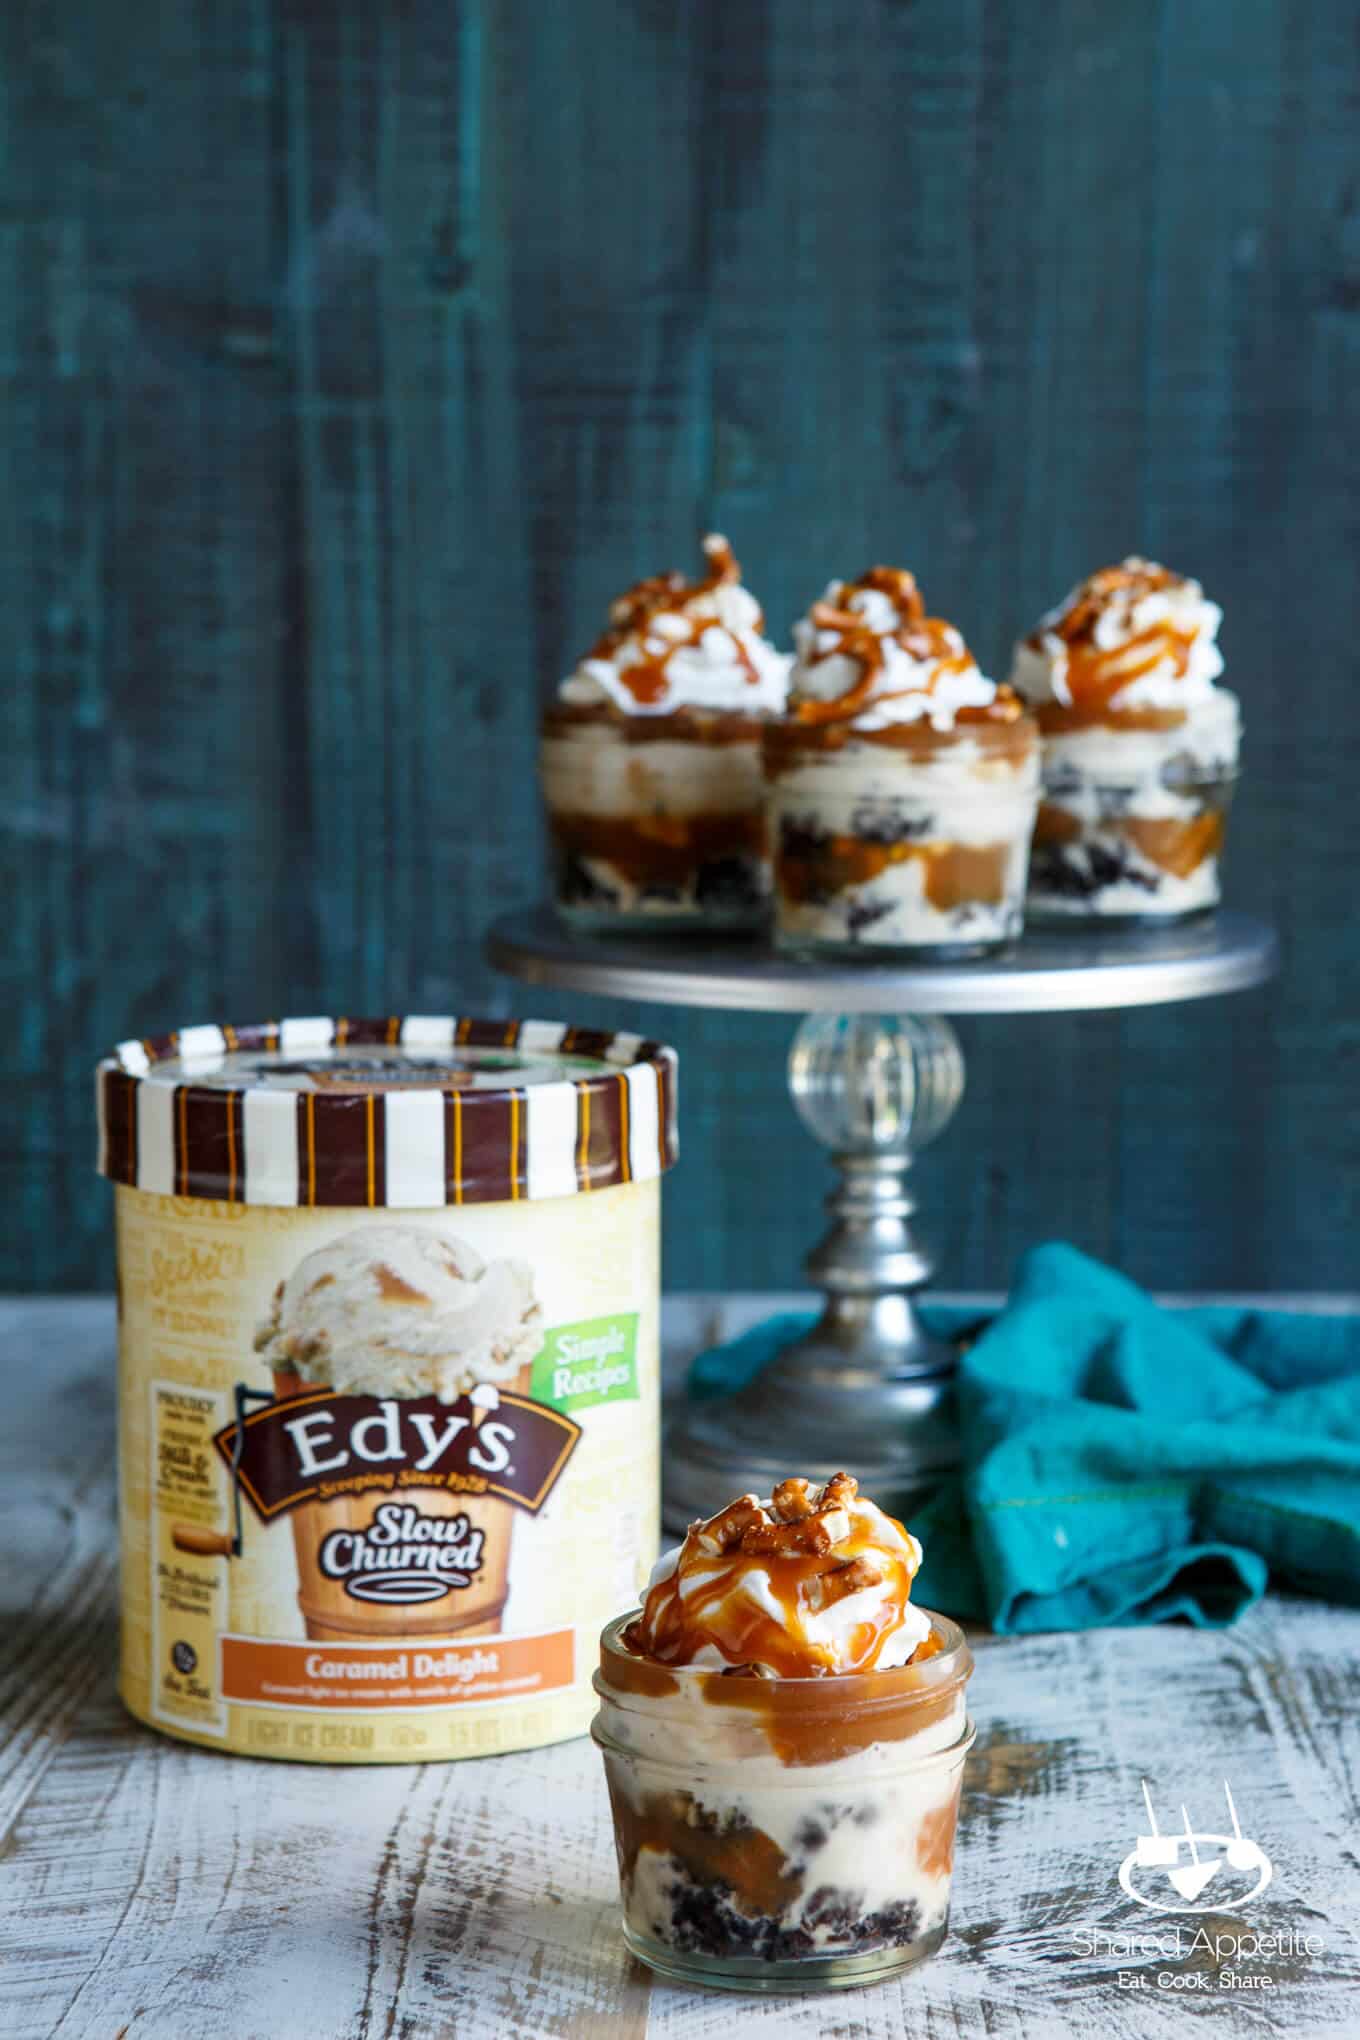 Mini Caramel Pretzel Ice Cream Trifles with Brownie | sharedappetite.com